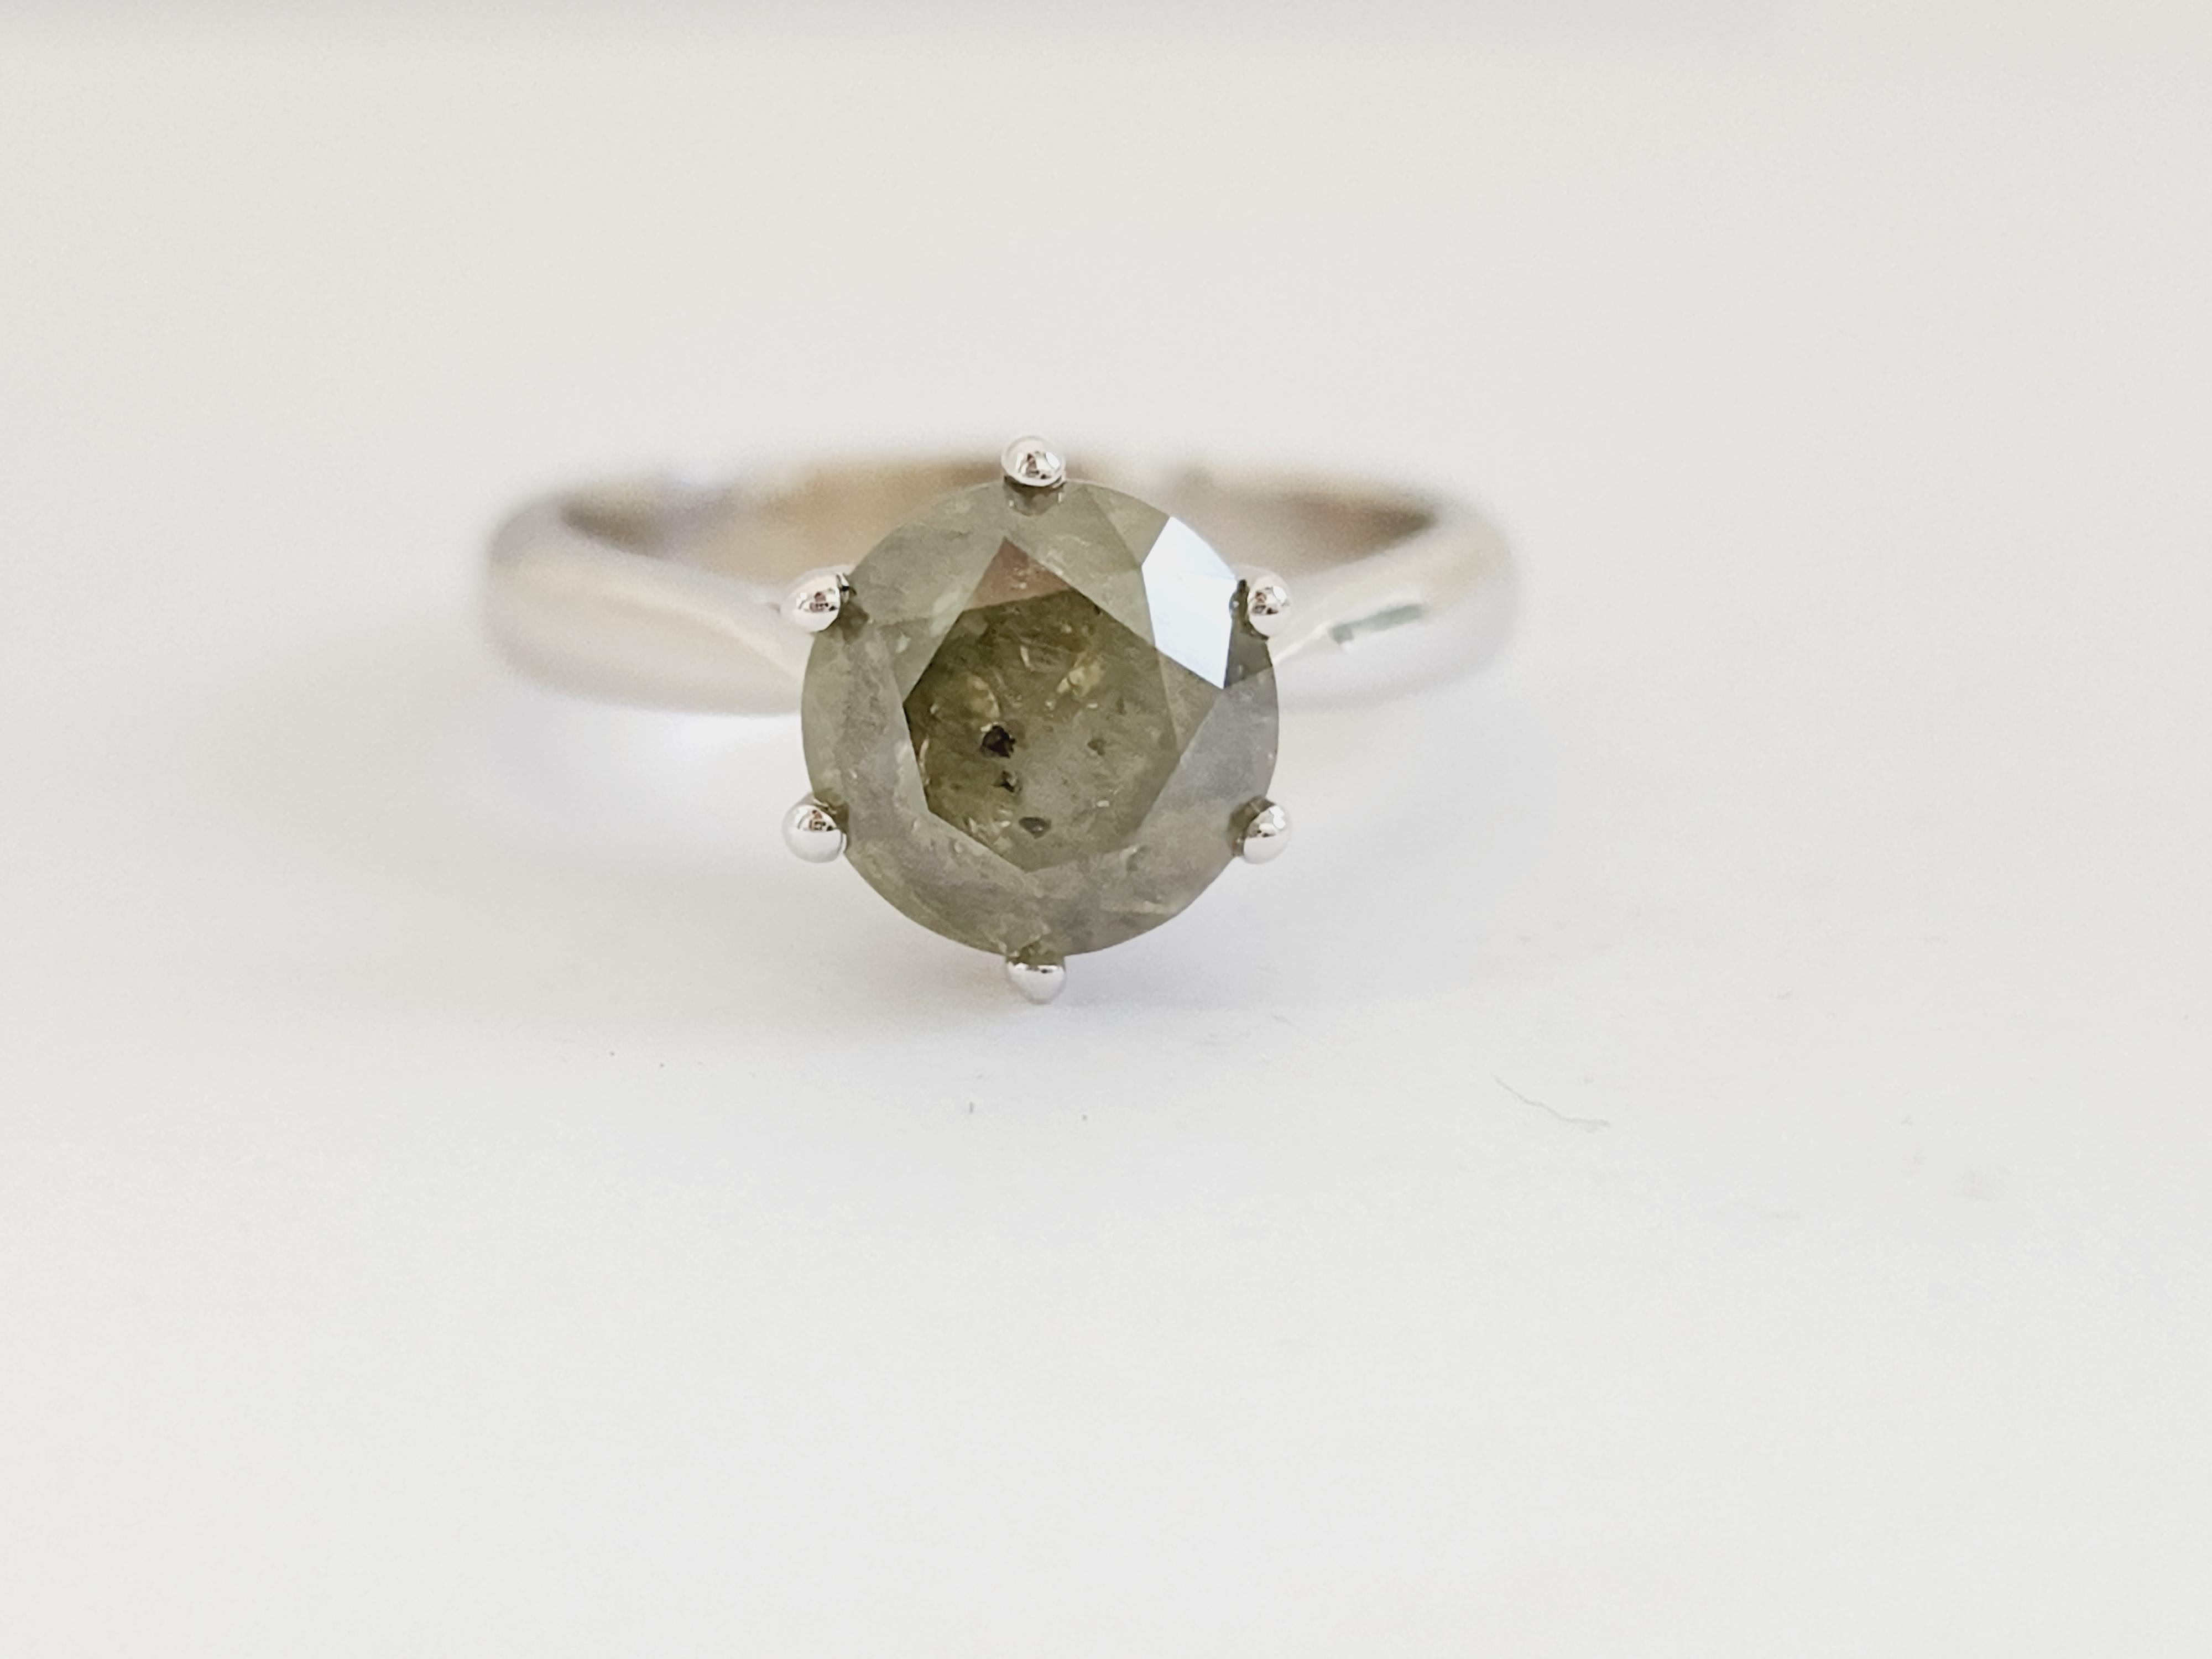 Natural GIA 2.25 Carat Green Round Diamond Ring 14 Karat White Gold. Set on 6-prong 14K solitaire white gold ring.
Ring size: 6.5